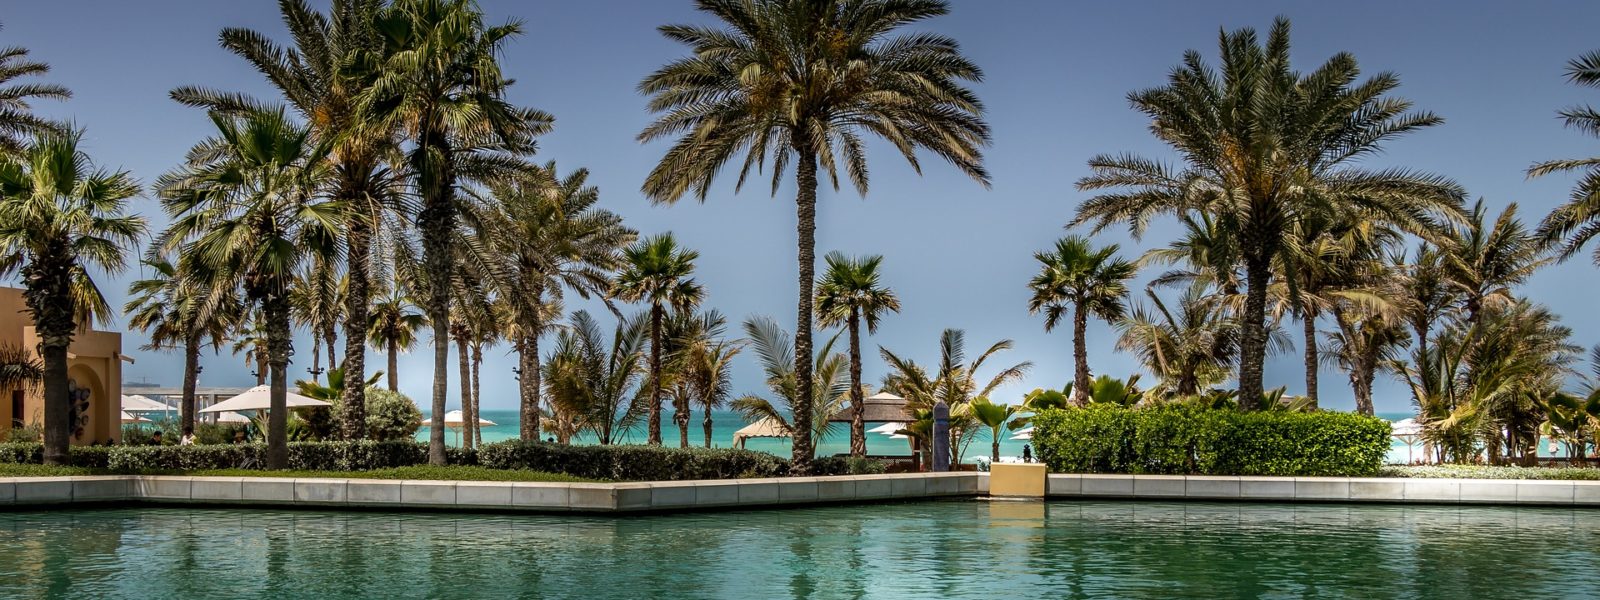 هل يجب أن تكون مليونيرا كي تقضي عطلتك في دبي؟